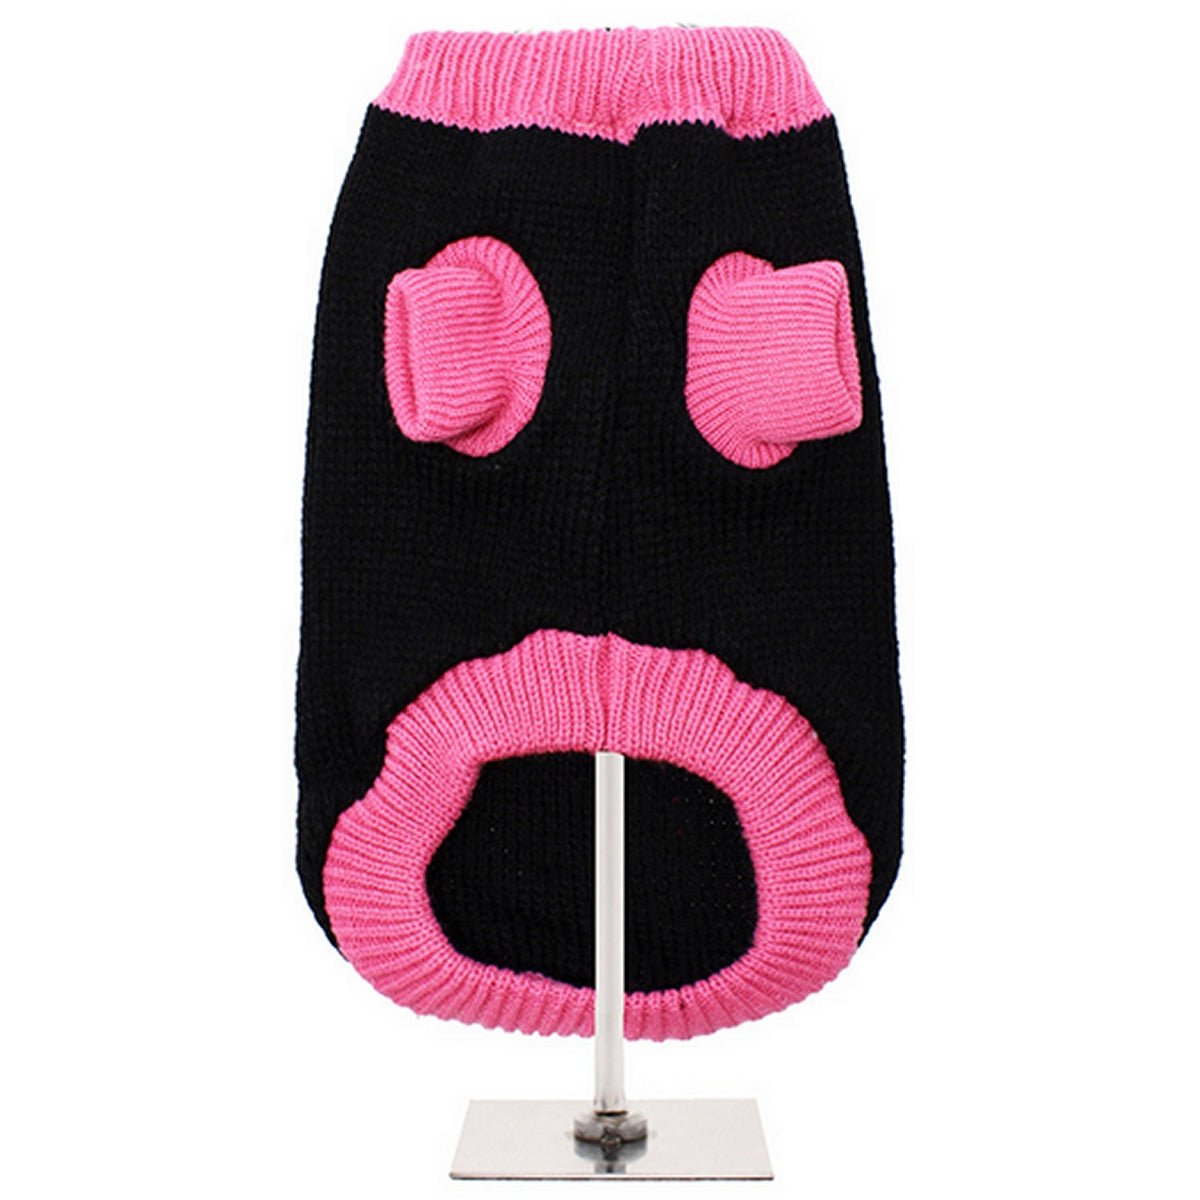 Knitted Dog Jumper Cardigan - Pink & Black